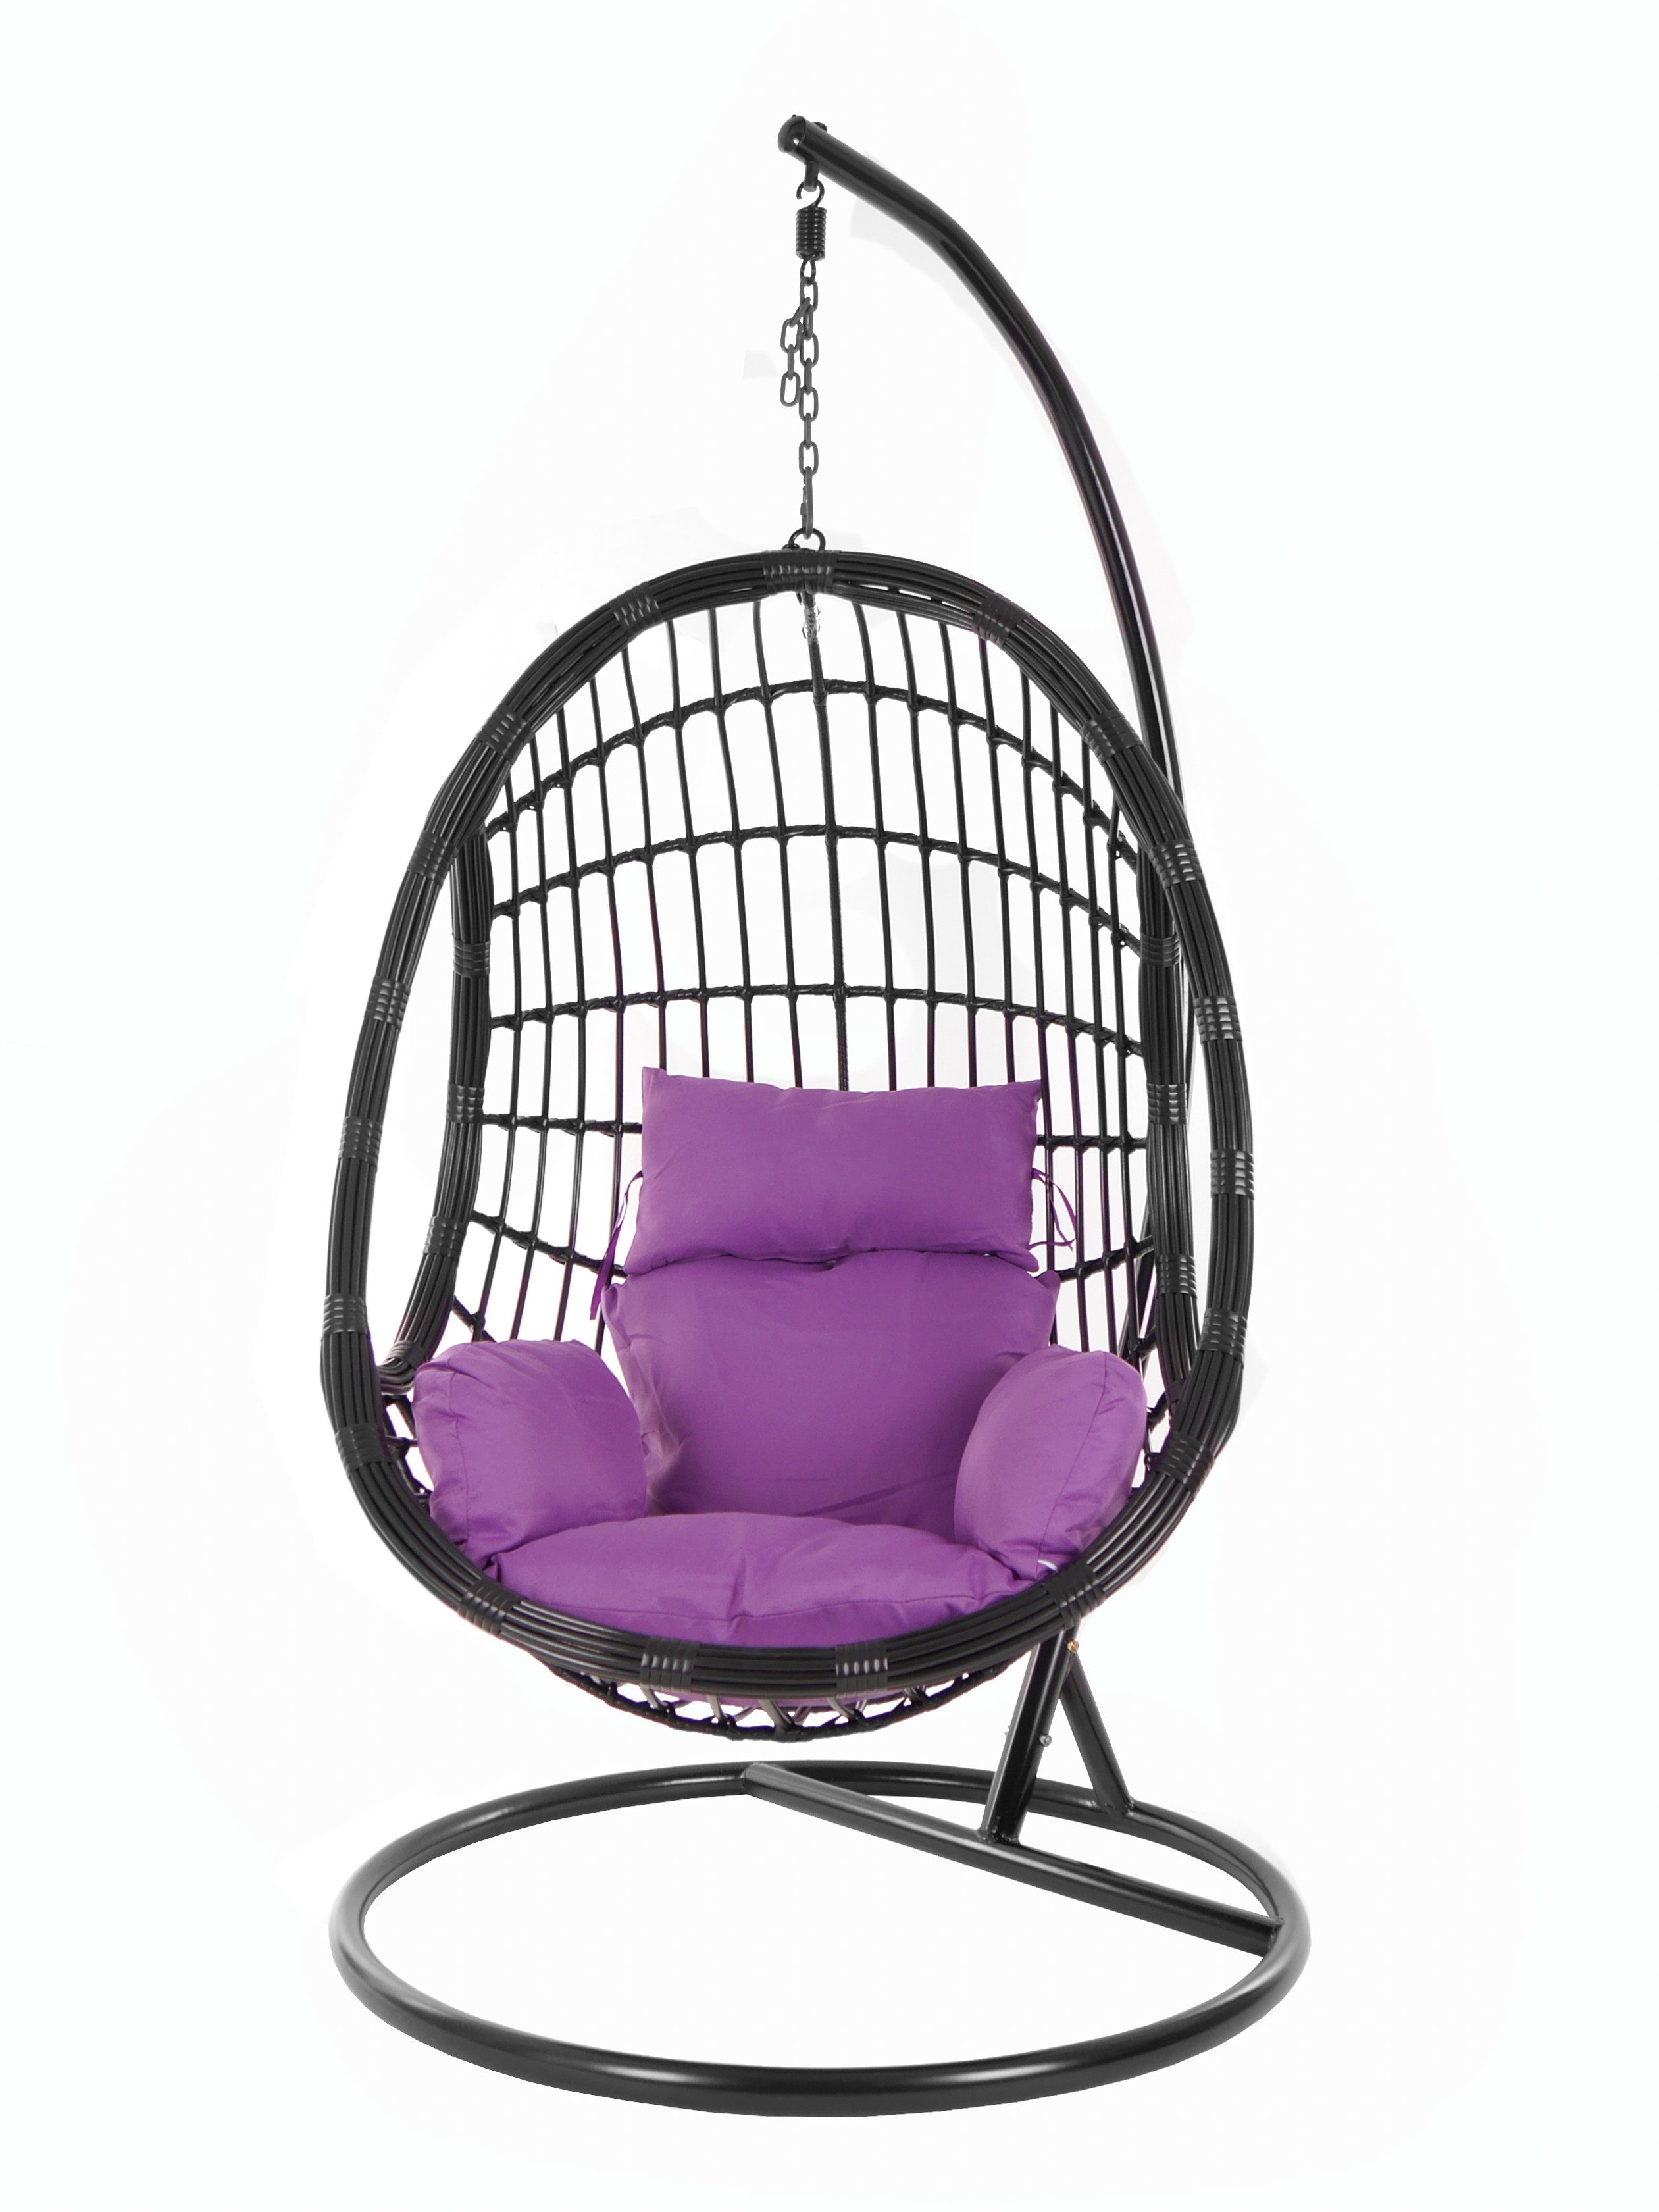 KIDEO Hängesessel PALMANOVA black, Schwebesessel, violet) mit und Chair, (4050 Gestell Swing Hängesessel lila Nest-Kissen Kissen